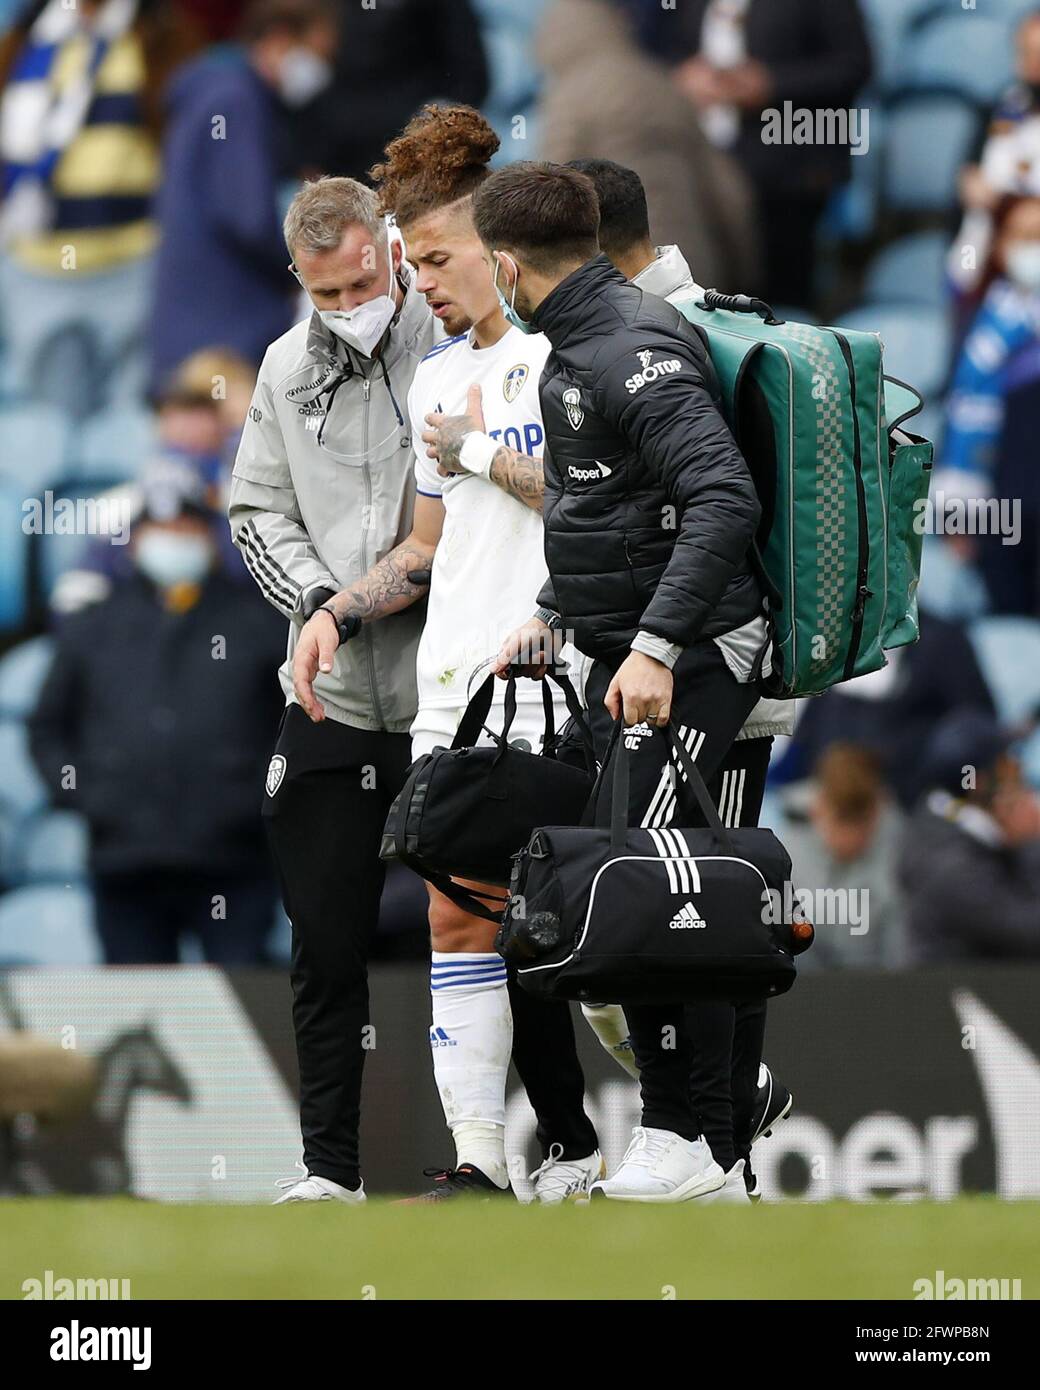 Photo du dossier datée du 23-05-2021, Kalvin Phillips de Leeds United quitte le terrain avec une blessure lors du match de la Premier League à Elland Road, Leeds. Date de publication : lundi 24 mai 2021. Banque D'Images